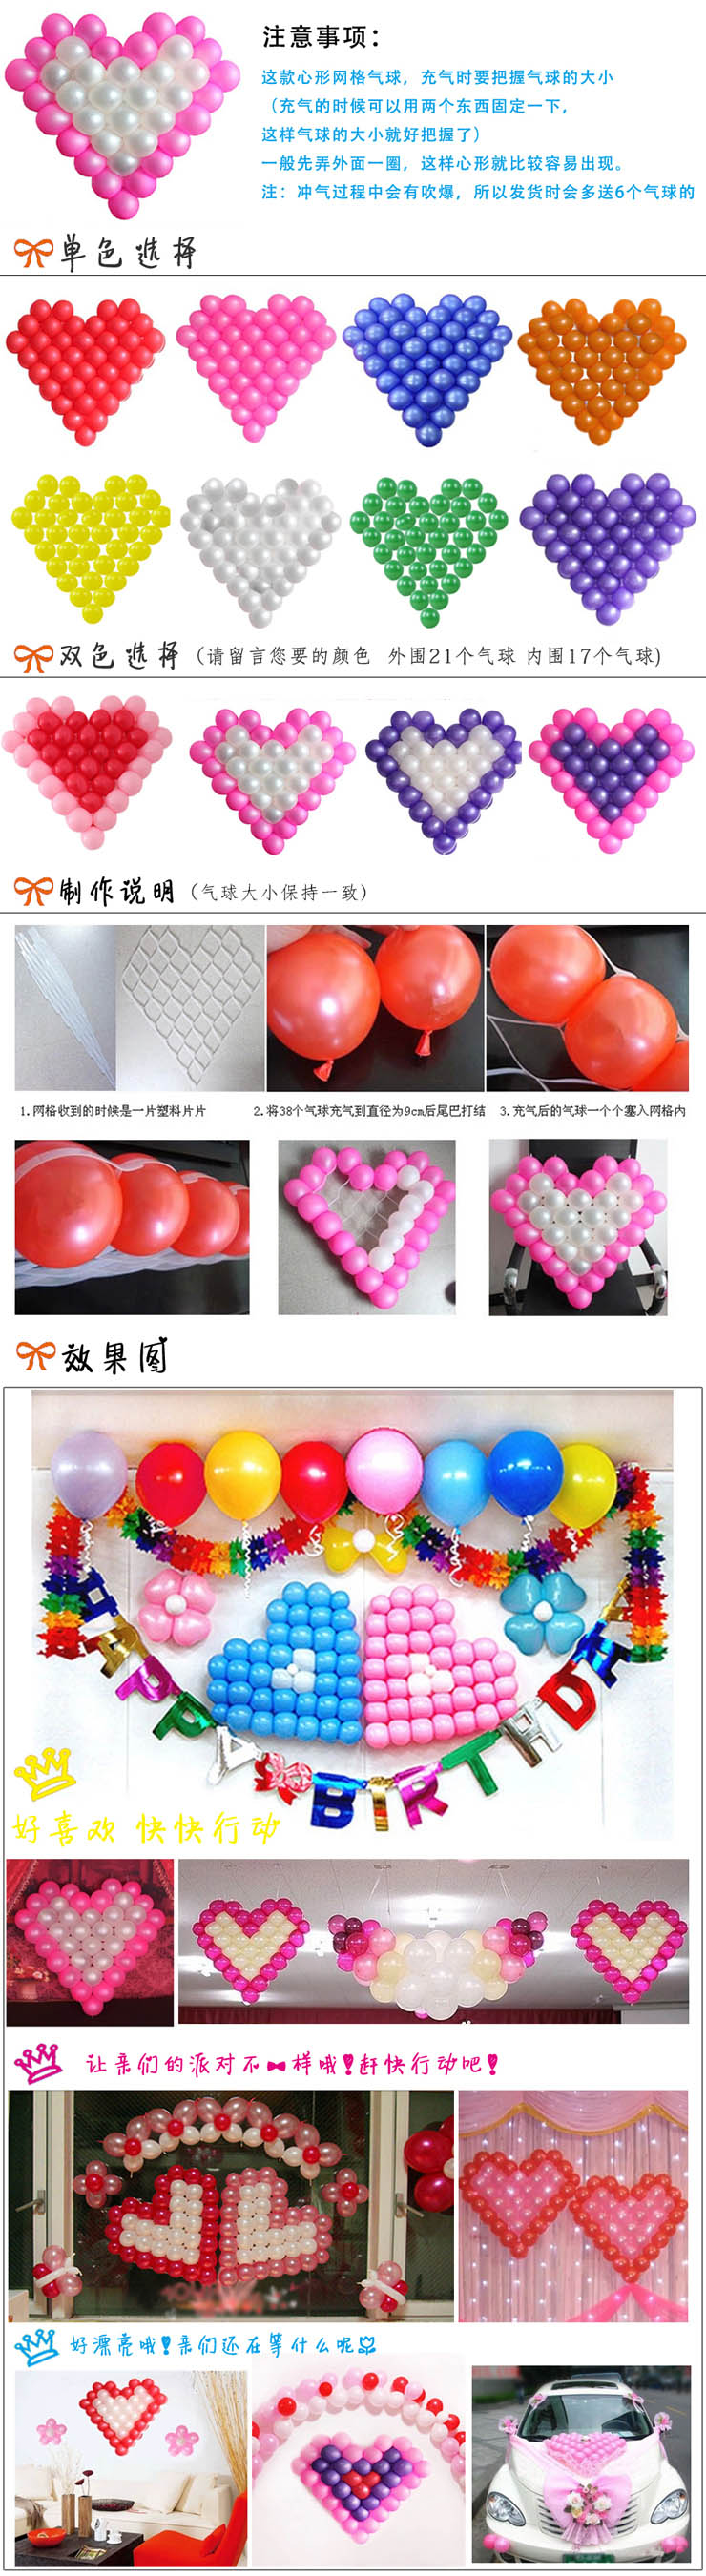 
                                        孩派/生日用品结婚用品/爱心网格气球/布置心形造型气球 外围 内围 颜色请留言                